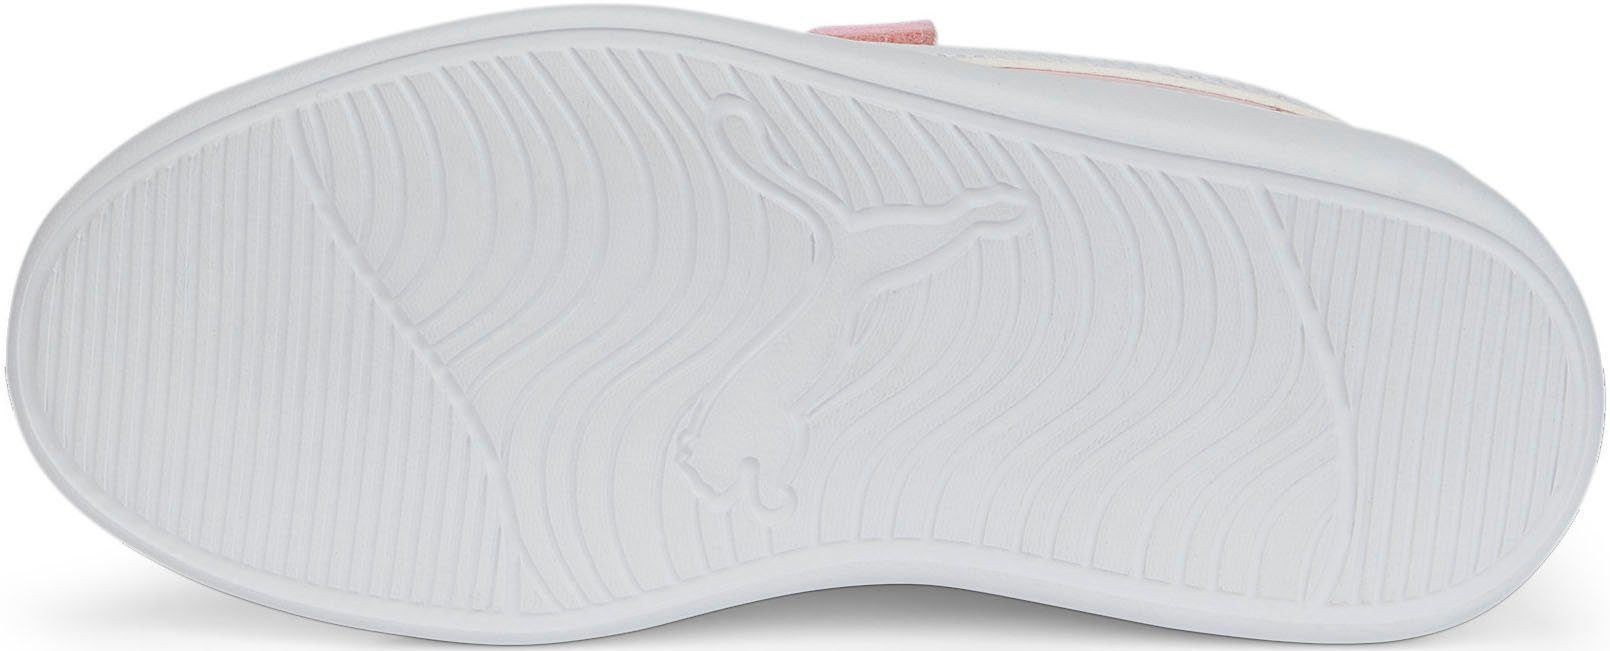 PUMA Courtflex v2 V PS Kinder pink Klettverschluss für mit Sneaker